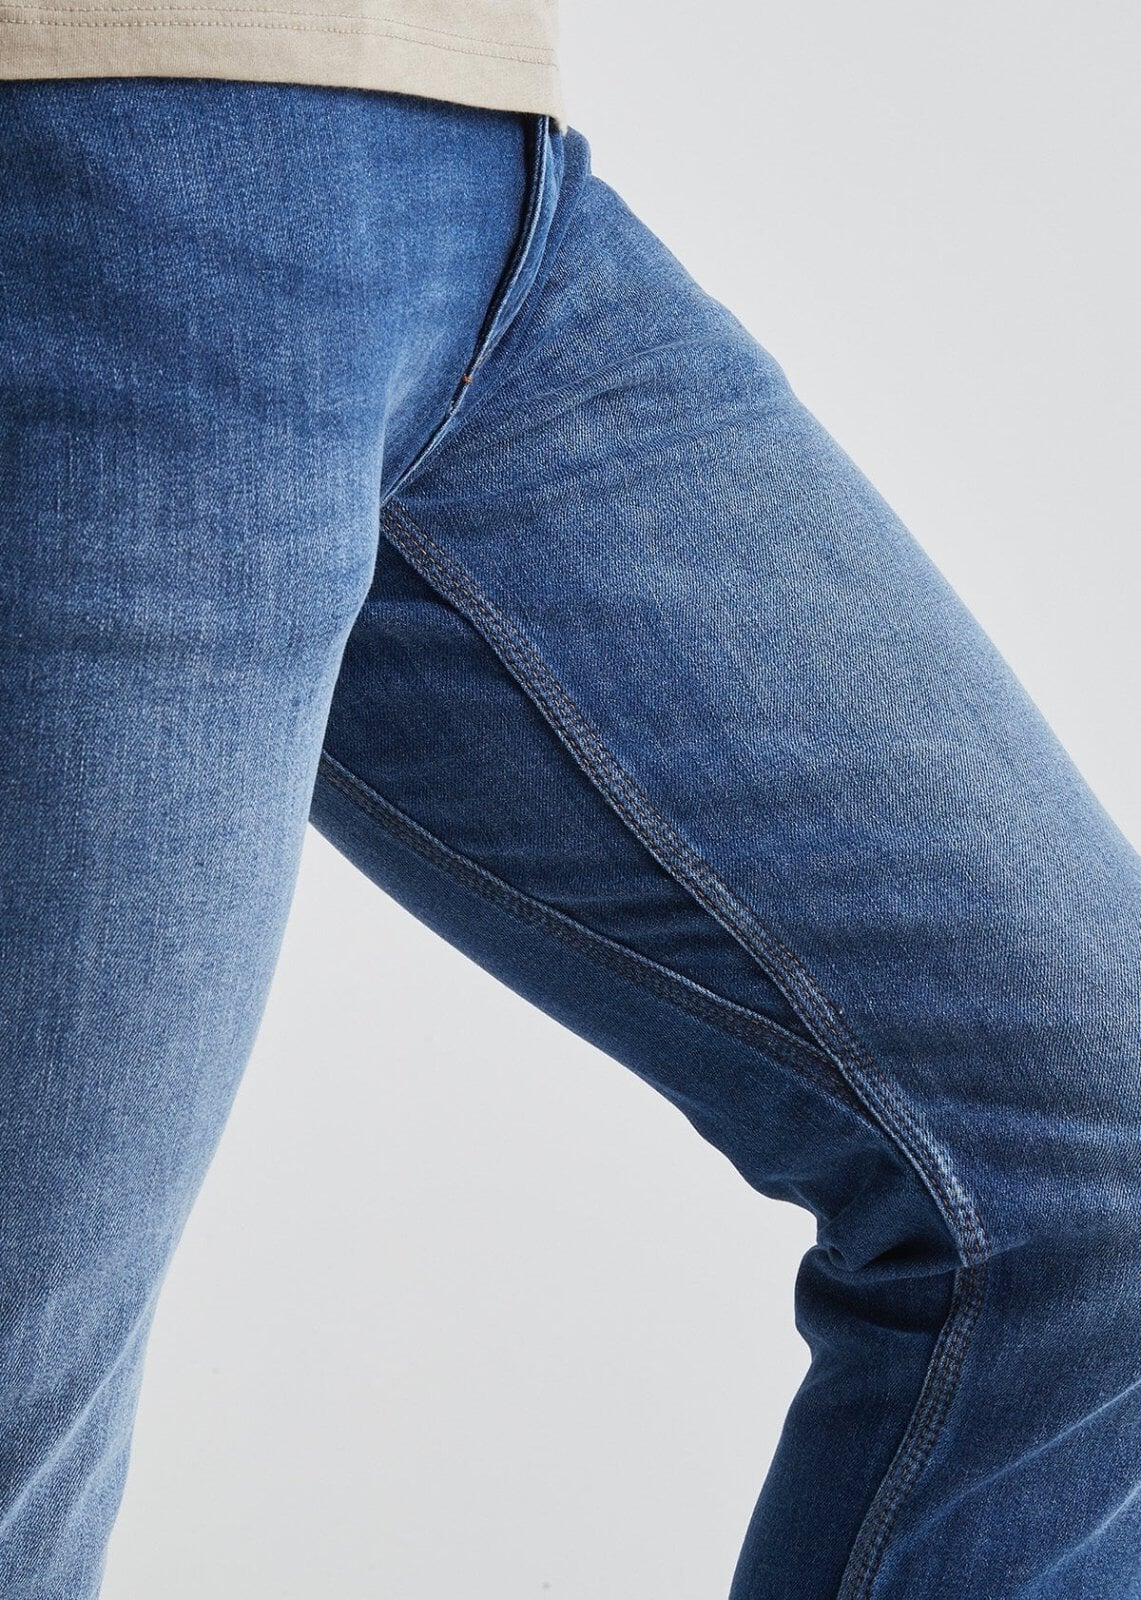 Buy DU/ER L2X Performance Denim Slim Fit Men's Jeans, Heritage Rinse (32L x  29W) at Amazon.in